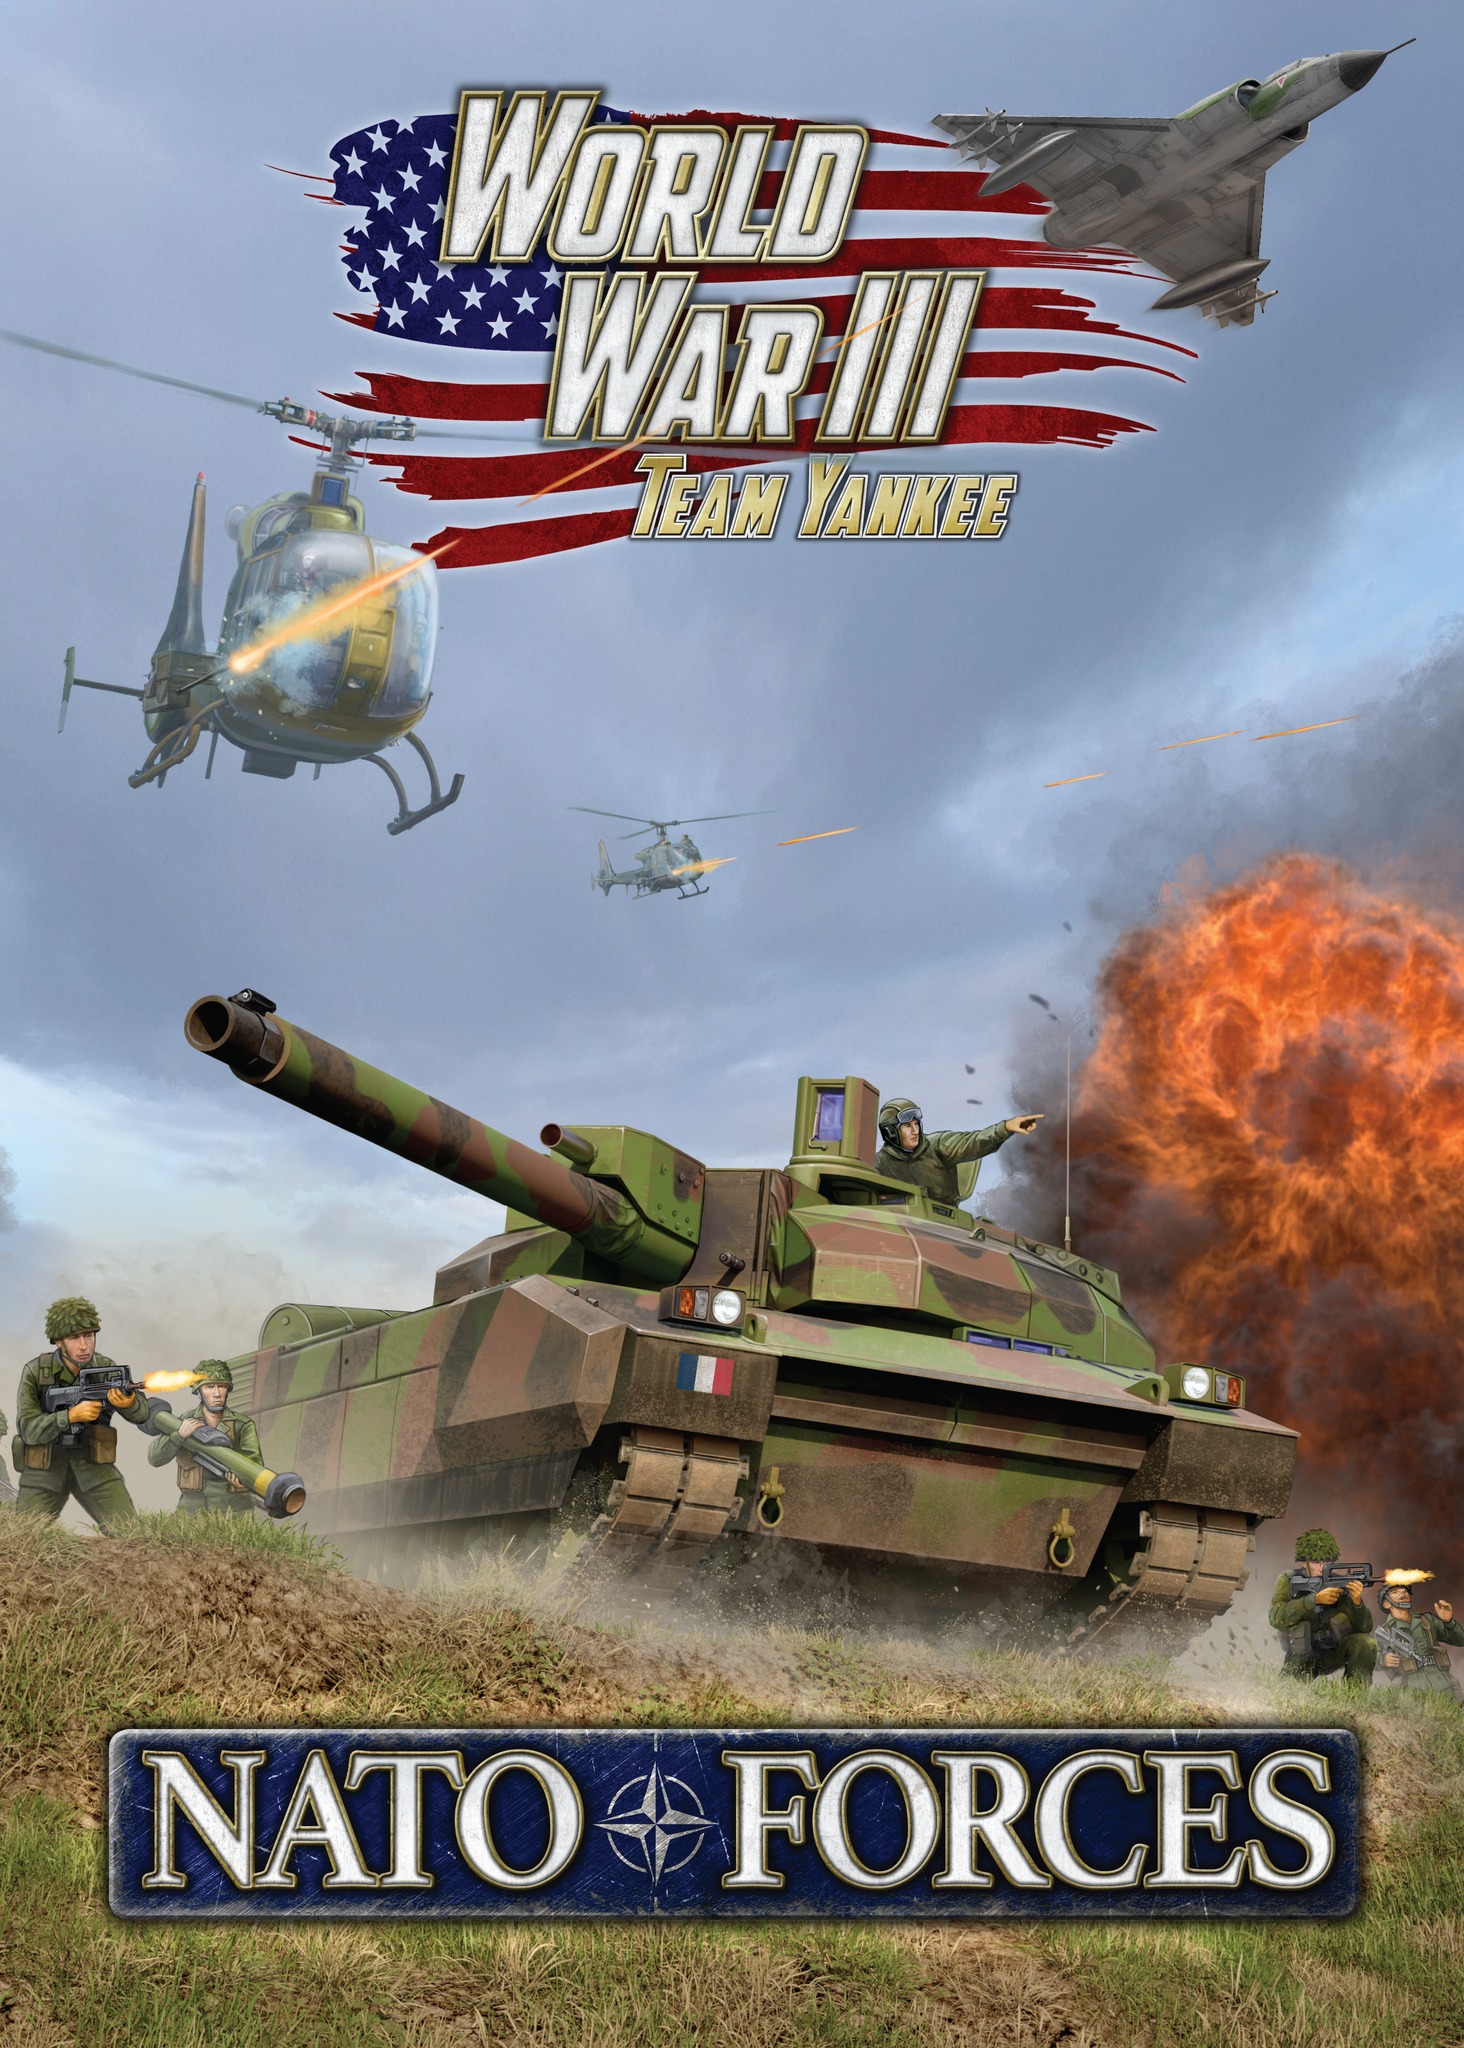 Découvrez les nouveautés pour les Forces de L'OTAN avec toutes les sorties pour le jeu Team Yankee avec le Nato Forces Book